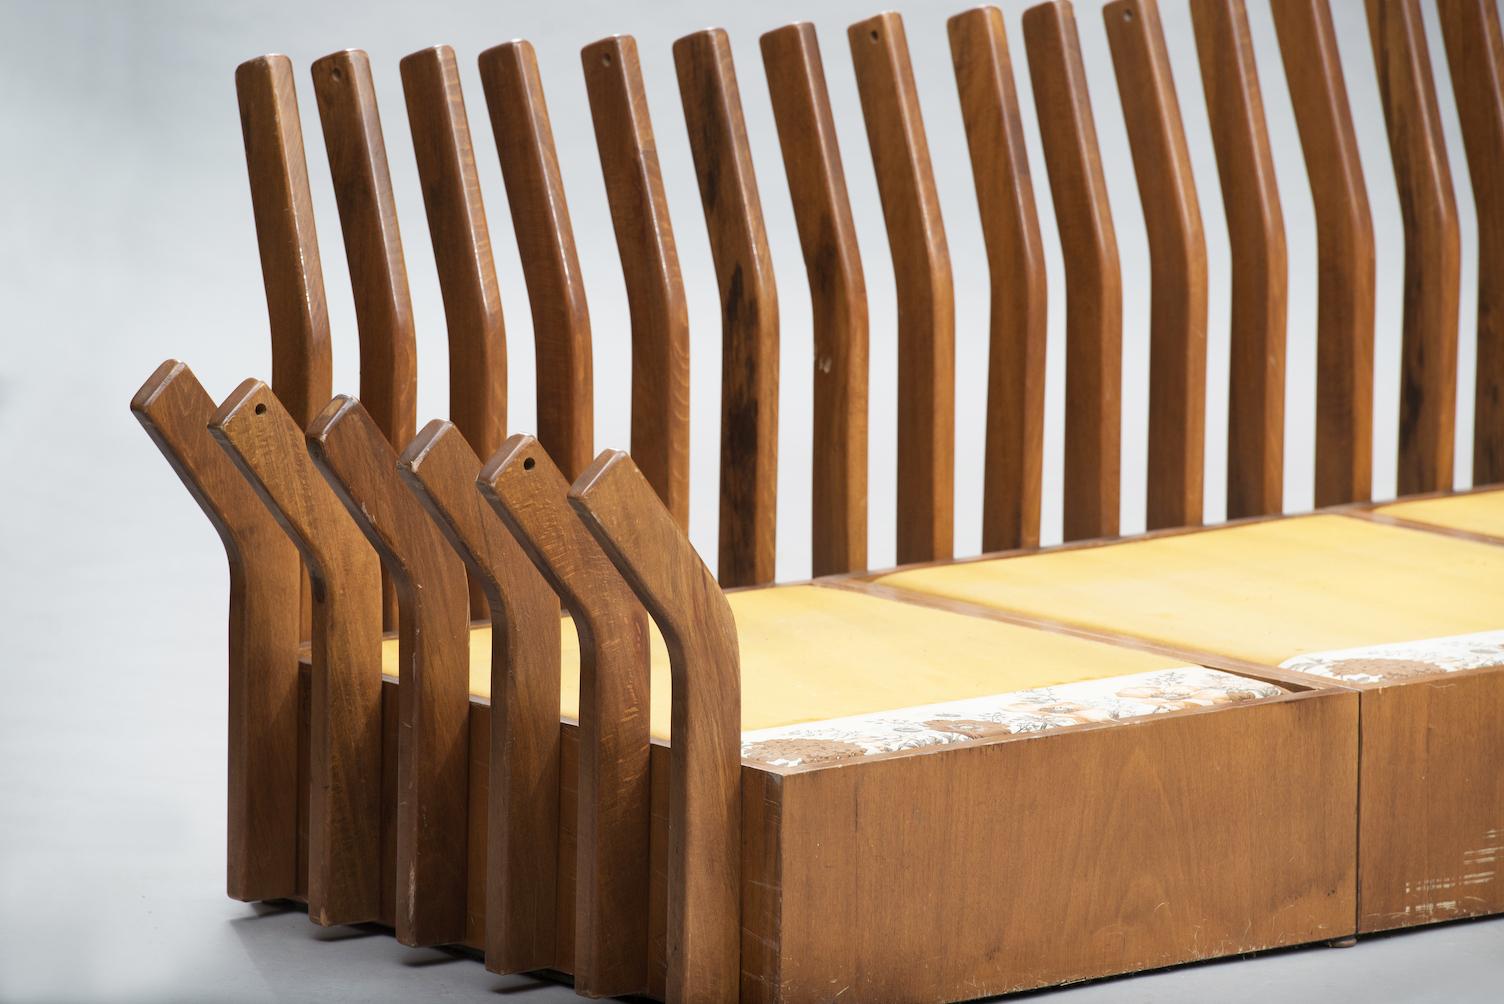 Dreisitziges Sofa mit Struktur aus Nussbaumholz.
Das Stück ist im Originalzustand und kann so verkauft werden, wie es ist, oder vollständig restauriert werden, wobei die fehlenden Kissen nach dem Geschmack des Kunden gepolstert werden.